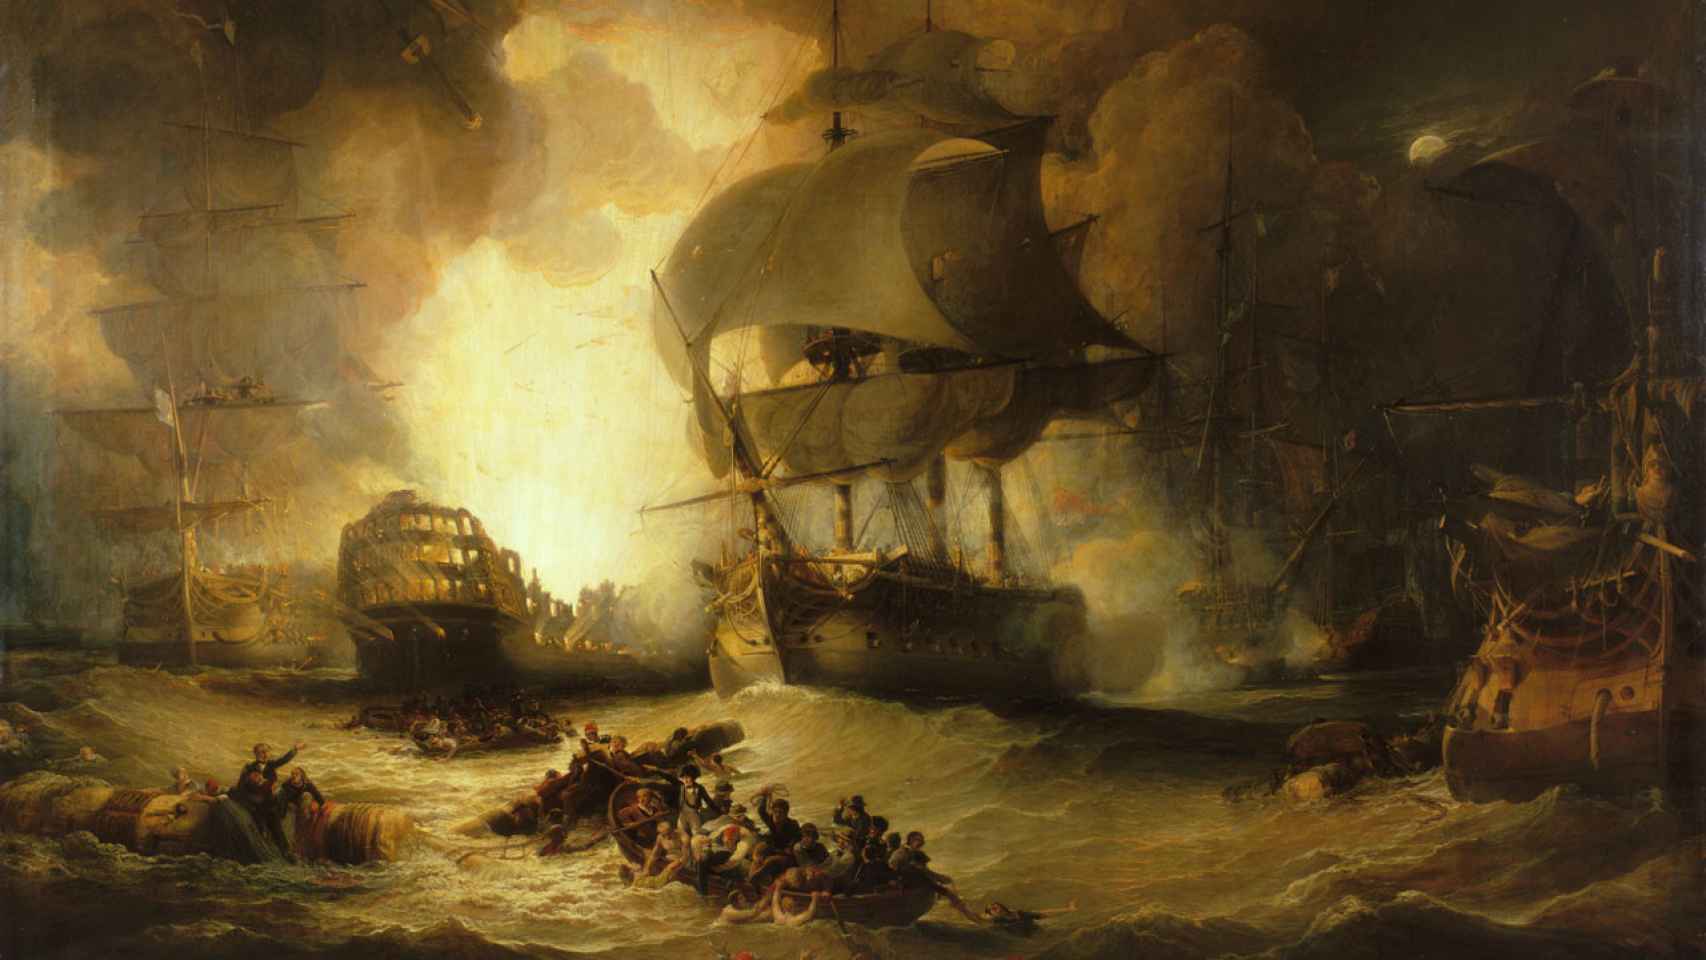 El fin de la flota francesa en la batalla del Nilo de 1798 según el pincel de George Arnald. C. 1825